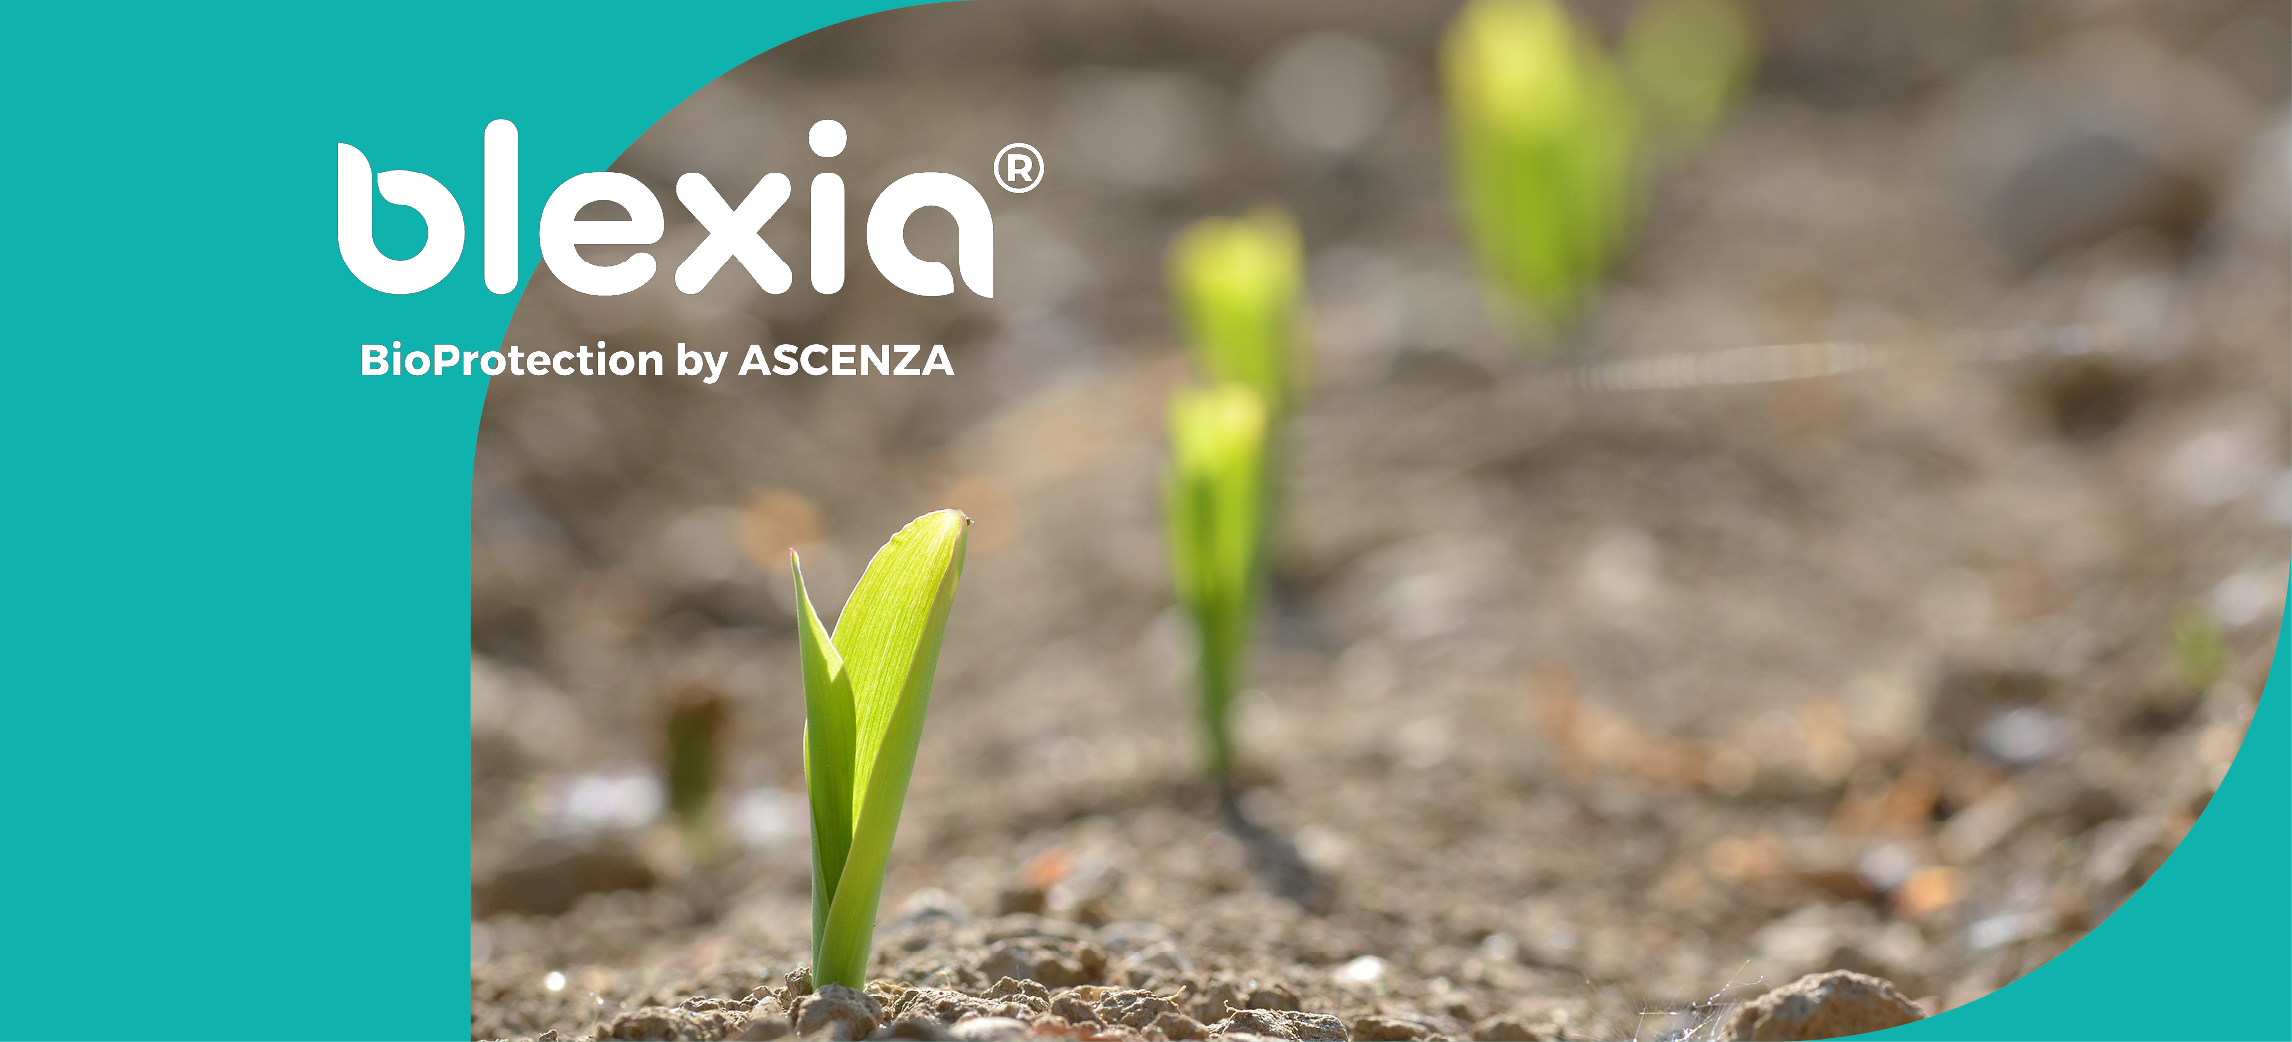 Un montage photo présentant de jeunes plantes avec le logo Blexia